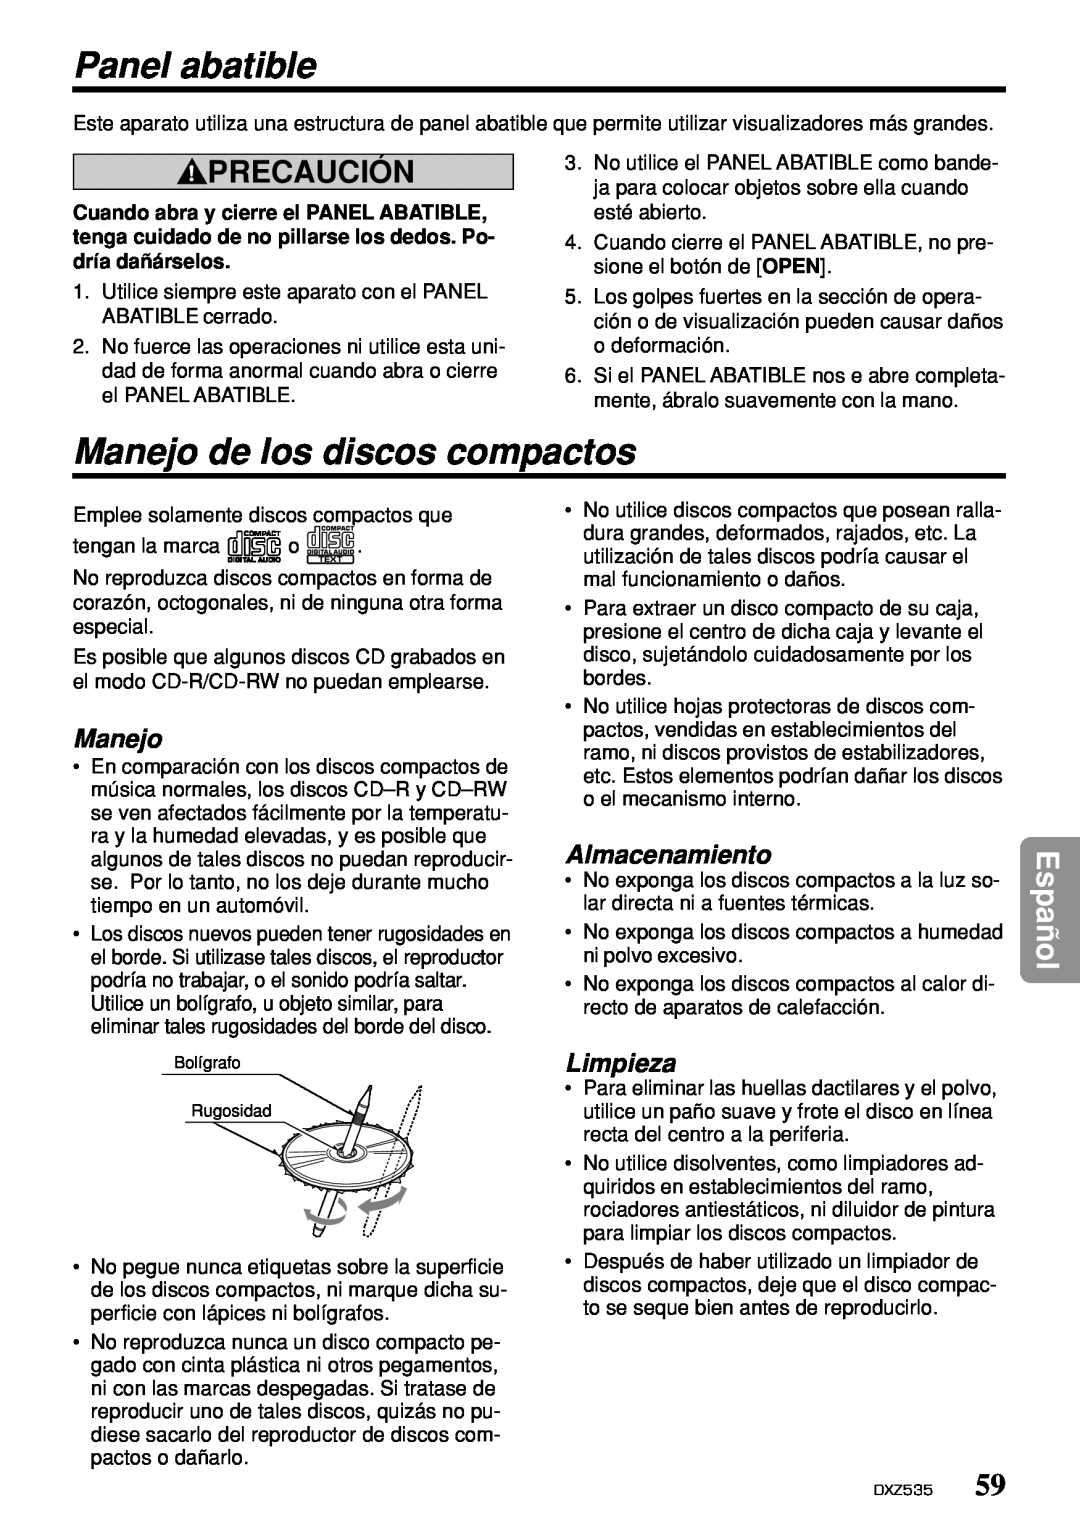 Clarion DXZ535 owner manual Panel abatible, Manejo de los discos compactos, Almacenamiento, Limpieza, Precaución, Español 